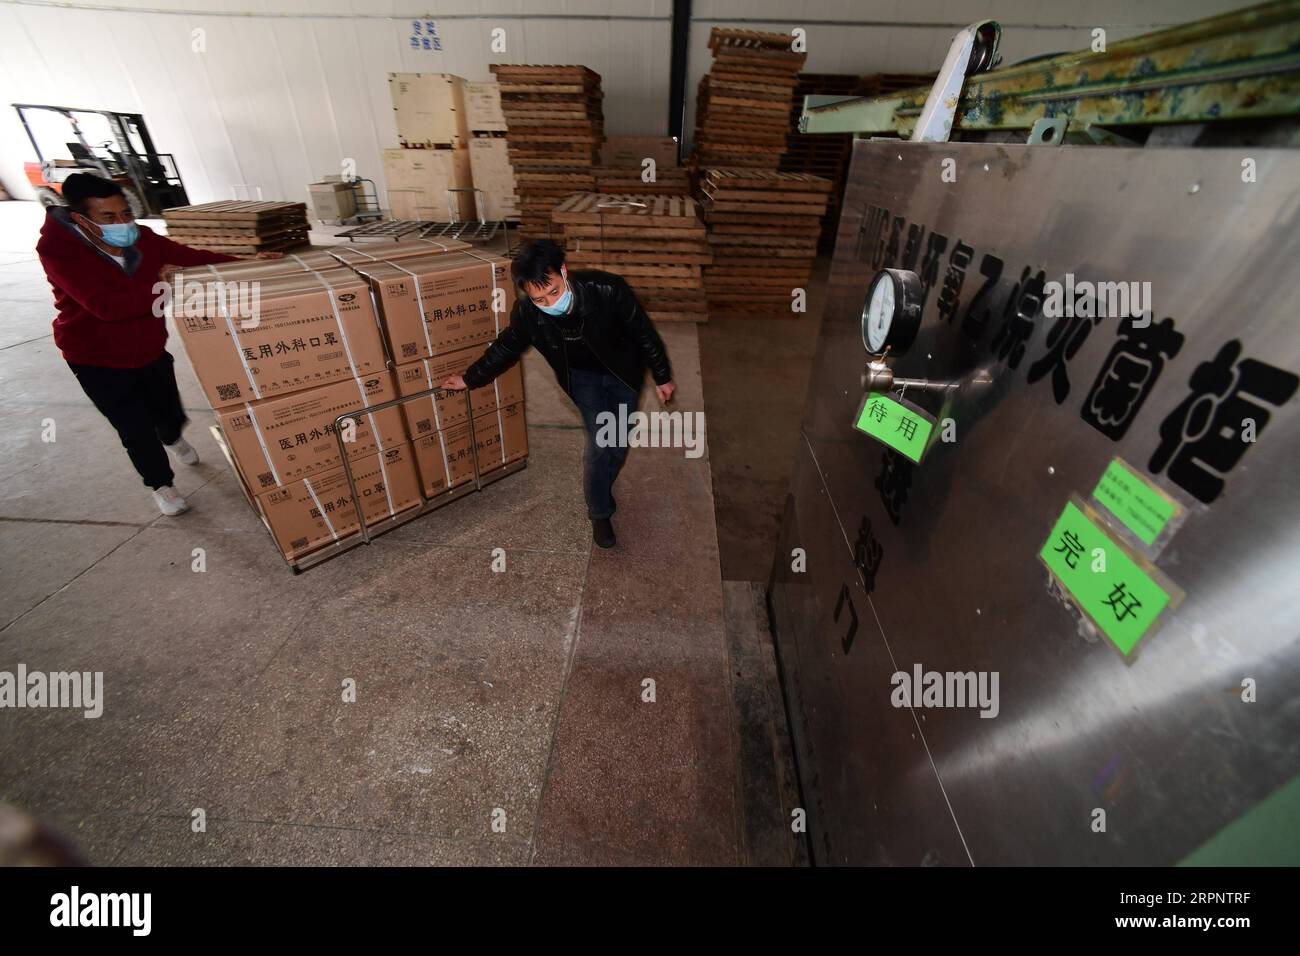 200305 -- GUIYANG, 5. März 2020 -- Arbeiter tragen Gesichtsmasken in einer Desinfektionswerkstatt des Guizhou Tianshi-Unternehmens für medizinische Geräte in der Stadt Qingzhen, Provinz Guizhou im Südwesten Chinas, 4. März 2020. Nach dem Ausbruch der neuartigen Coronavirus-Krankheit steigt die Nachfrage nach medizinischer Maske und Schutzkleidung deutlich an. Guizhou Tianshi Medical Devices Company forderte die Arbeiter auf, während der Feiertage Ende Januar wieder zur Arbeit zurückzukehren und nahm die Produktion allmählich wieder auf. Um seine Produktionskapazität zu erhöhen, fügte das Unternehmen neun weitere neue Produktionslinien hinzu, und die Mitarbeiter arbeiten rund um die Uhr in Shif Stockfoto